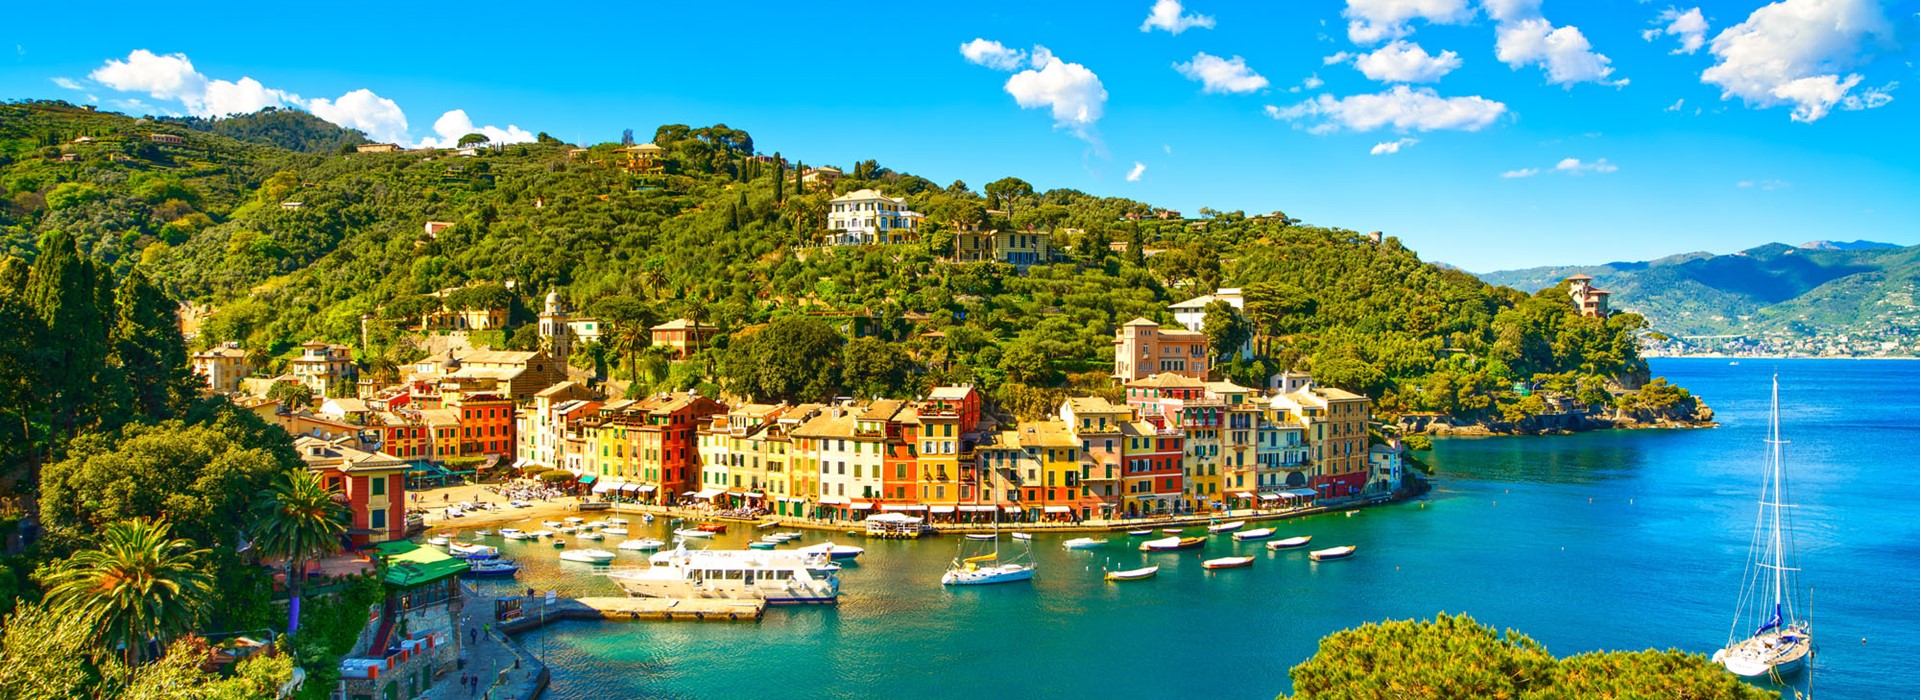 tourhub | Newmarket Holidays | Portofino, Florence & Tuscany 